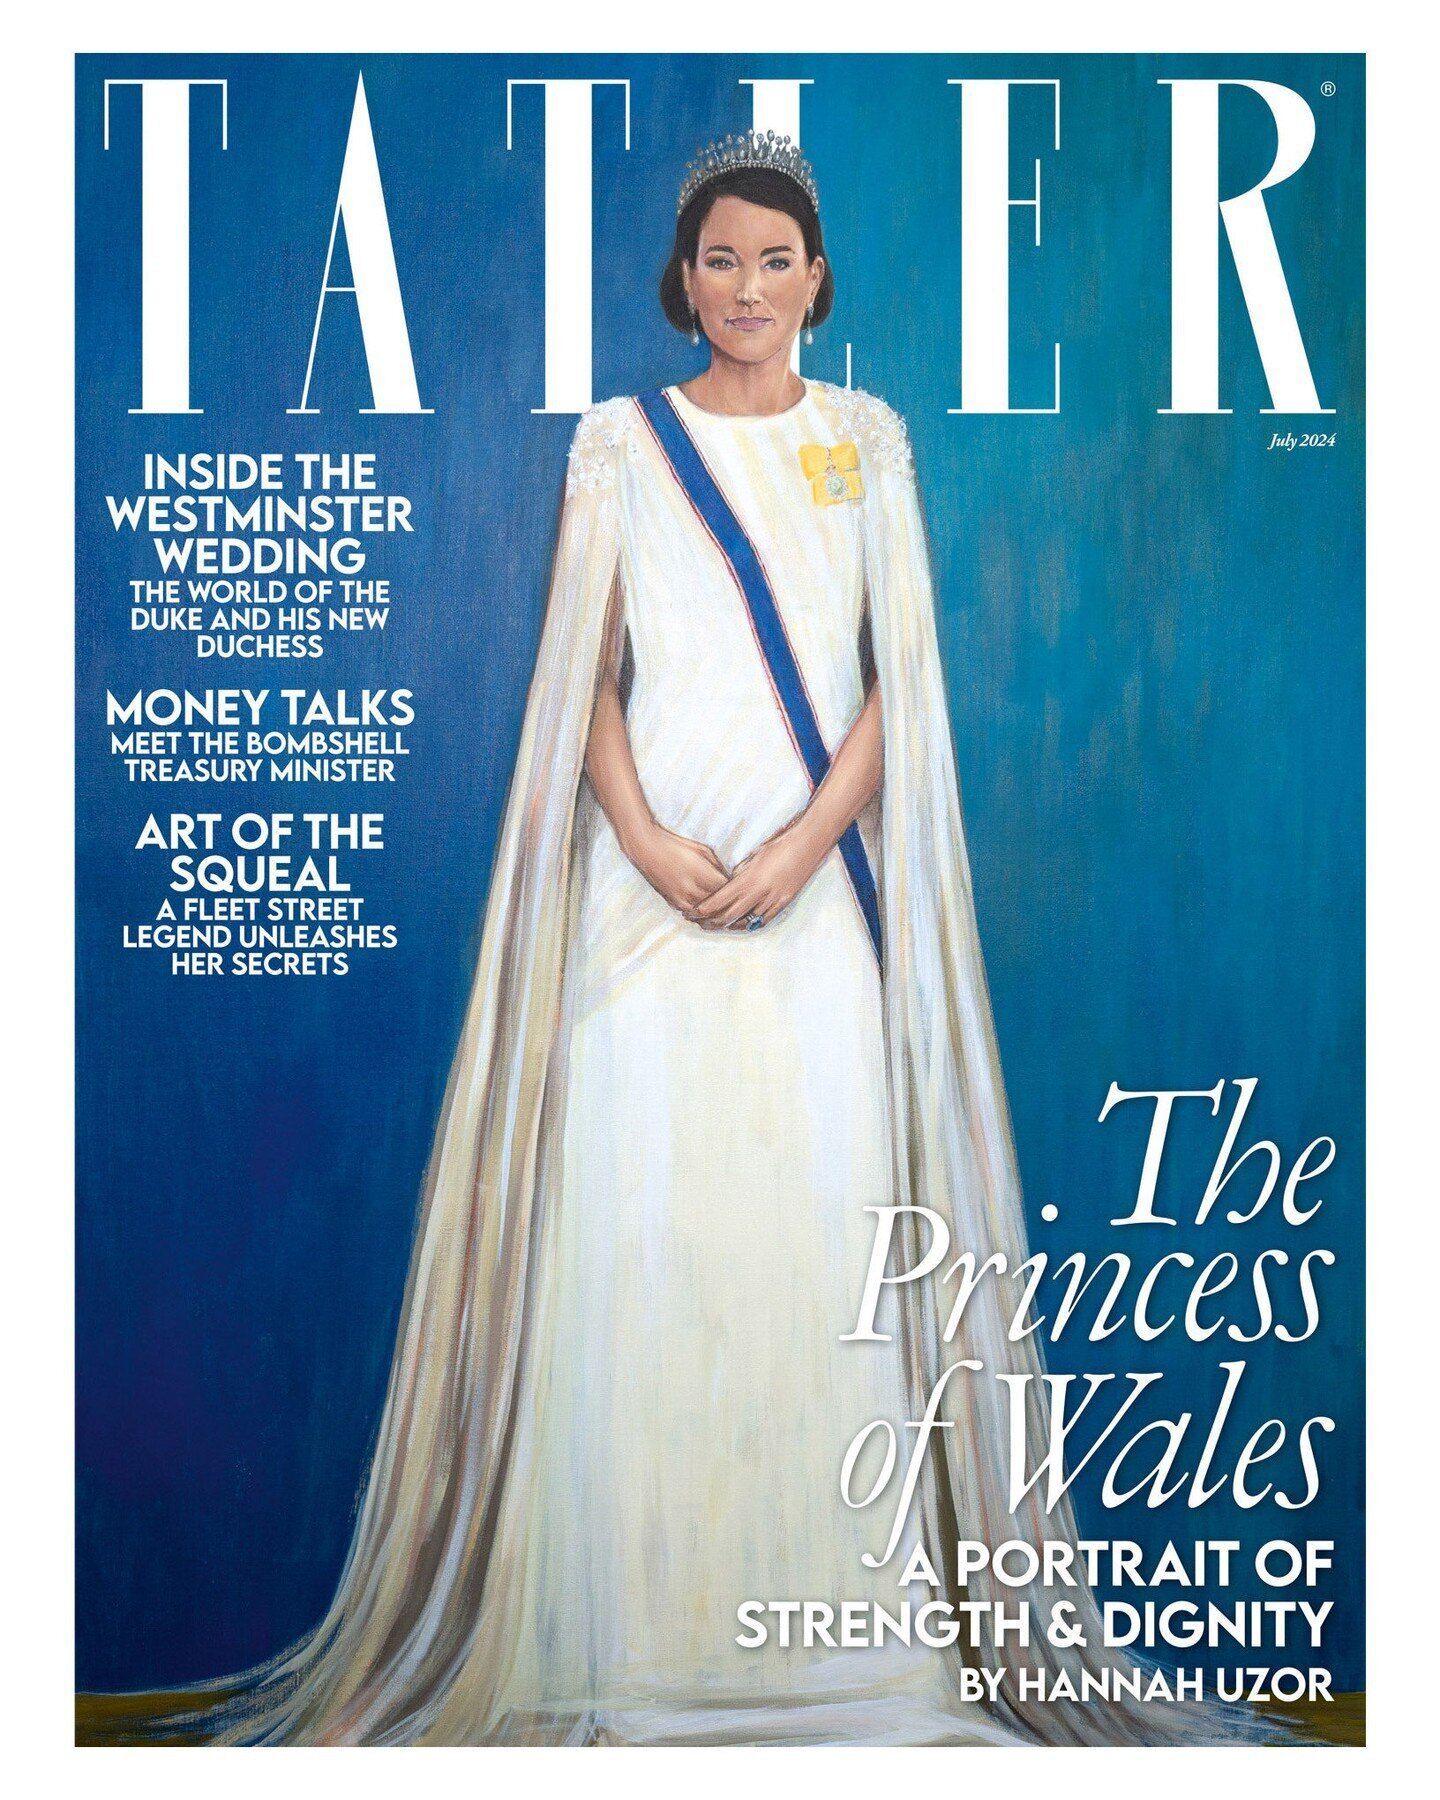 Новый портрет Кейт Миддлтон на обложке журнала смутил поклонников королевской семьи. Фото